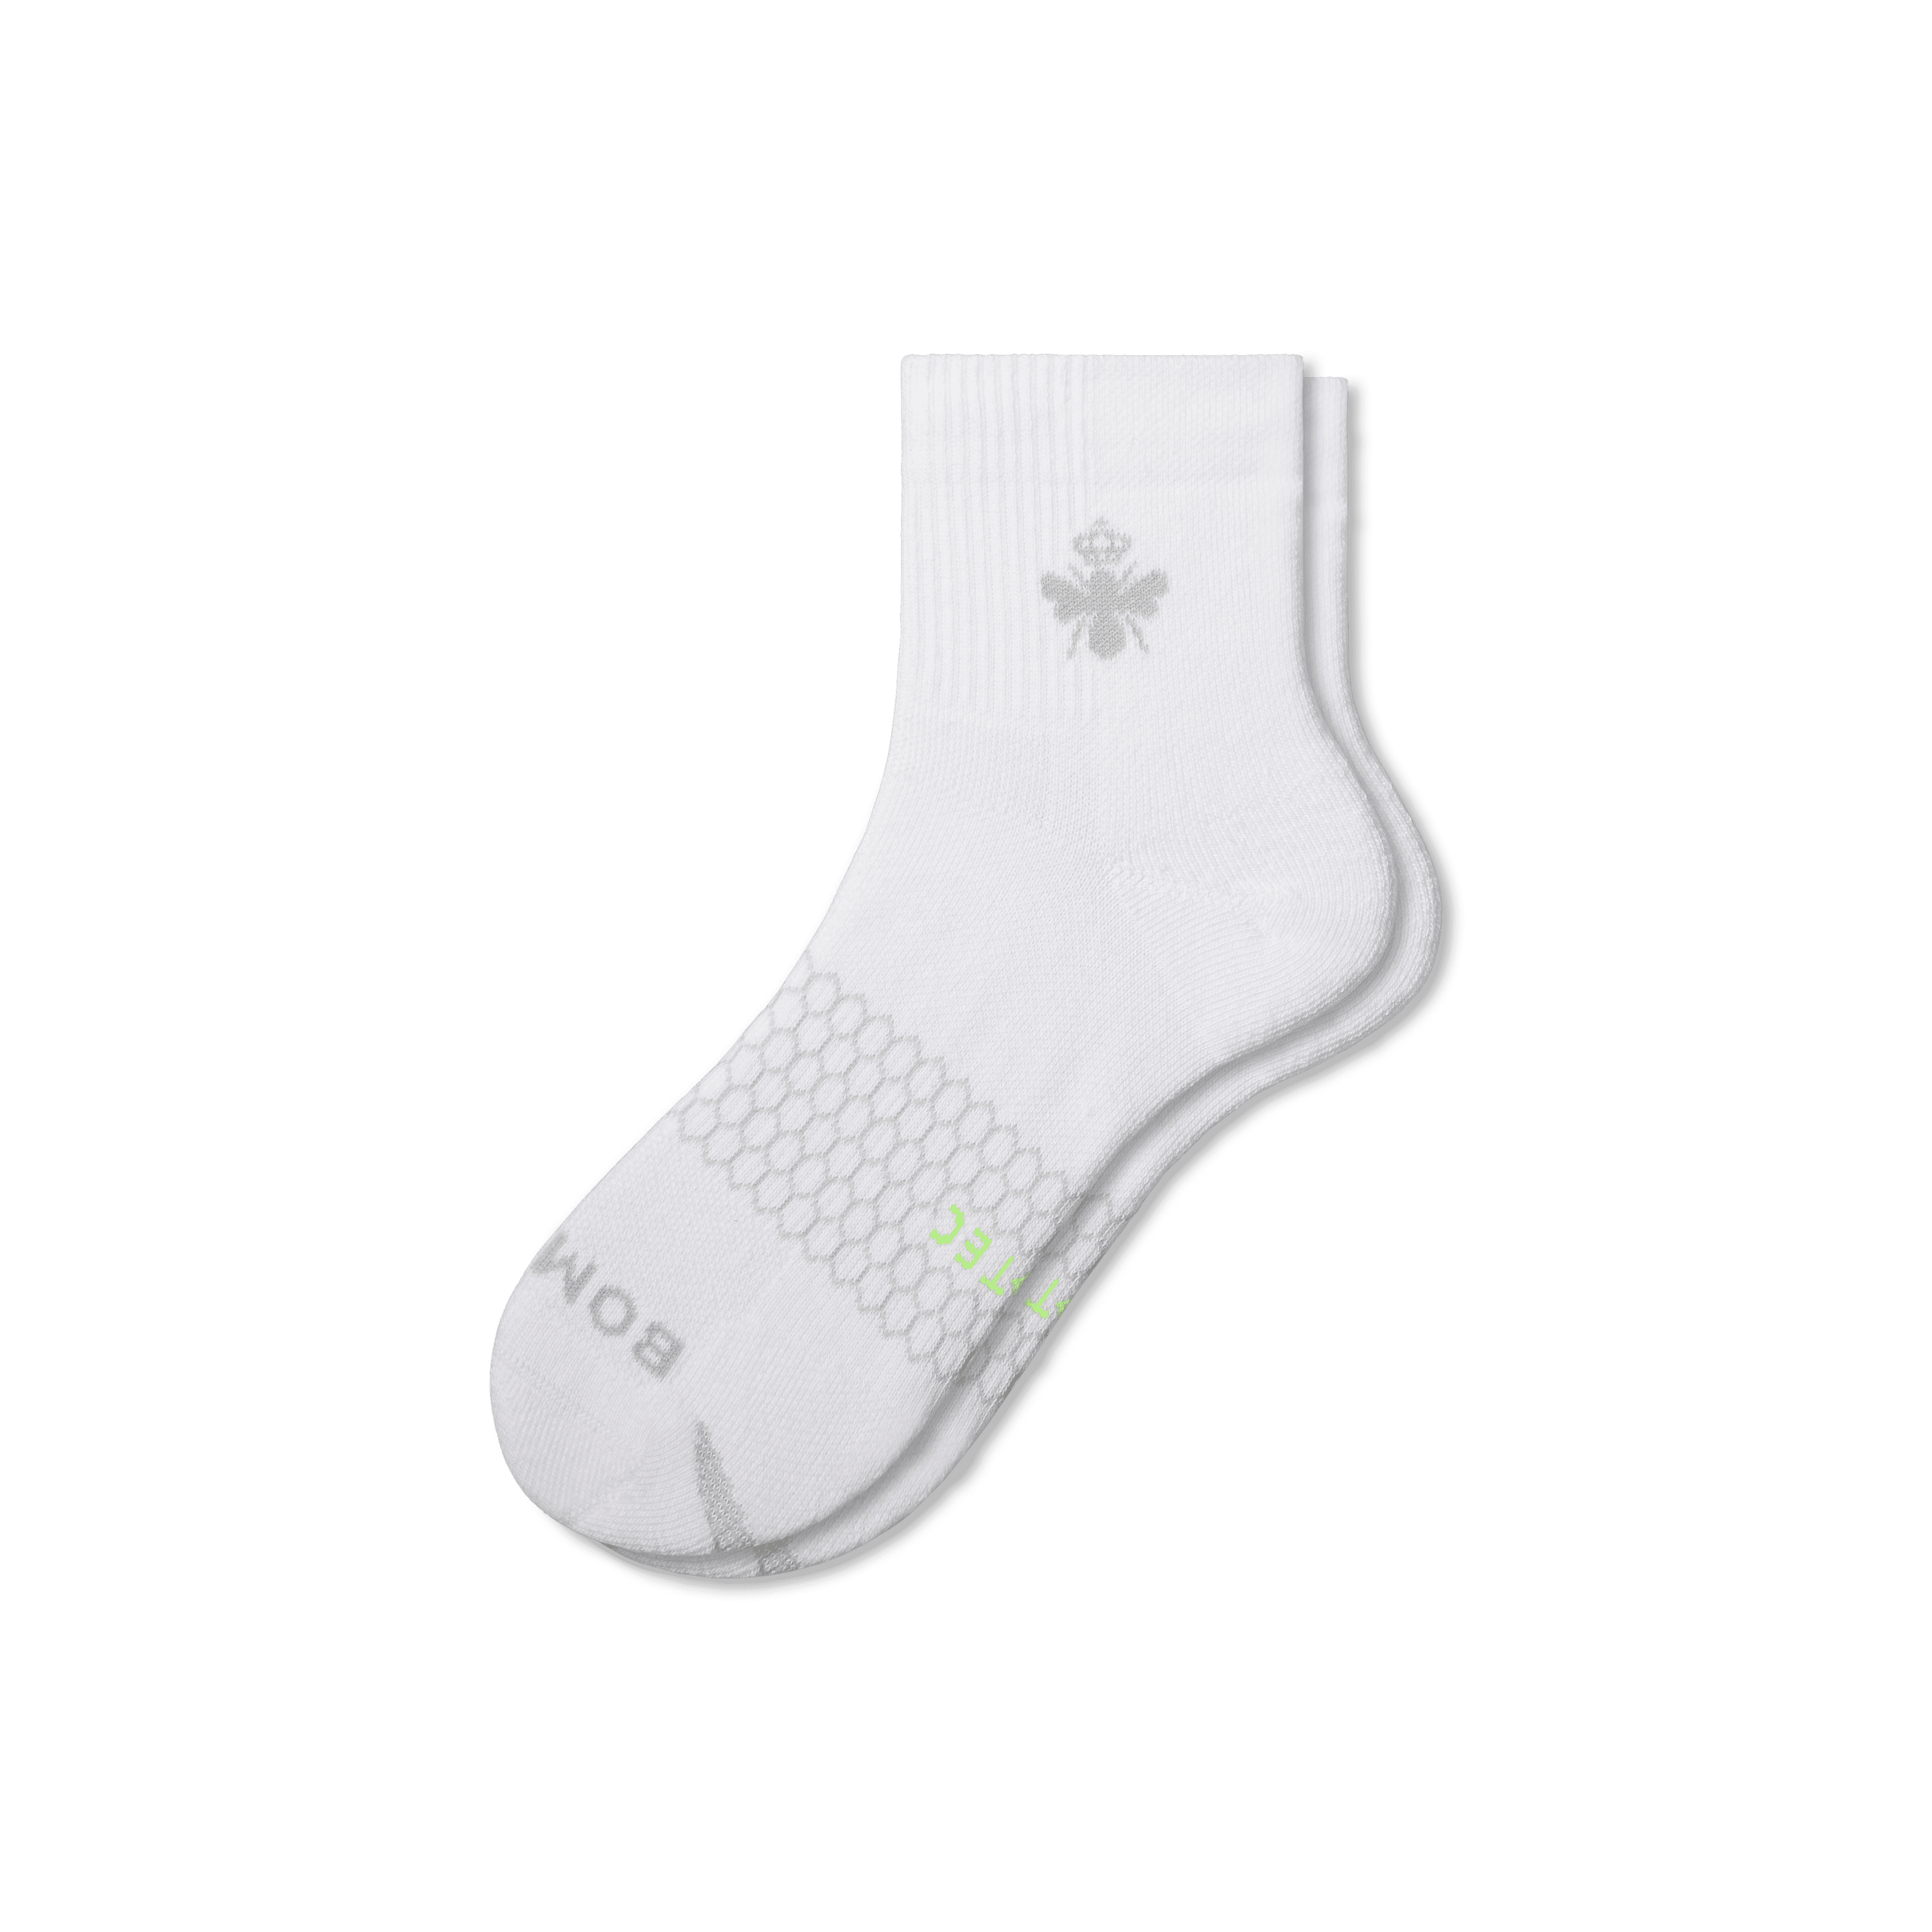 Bombas All-purpose Performance Quarter Socks In White